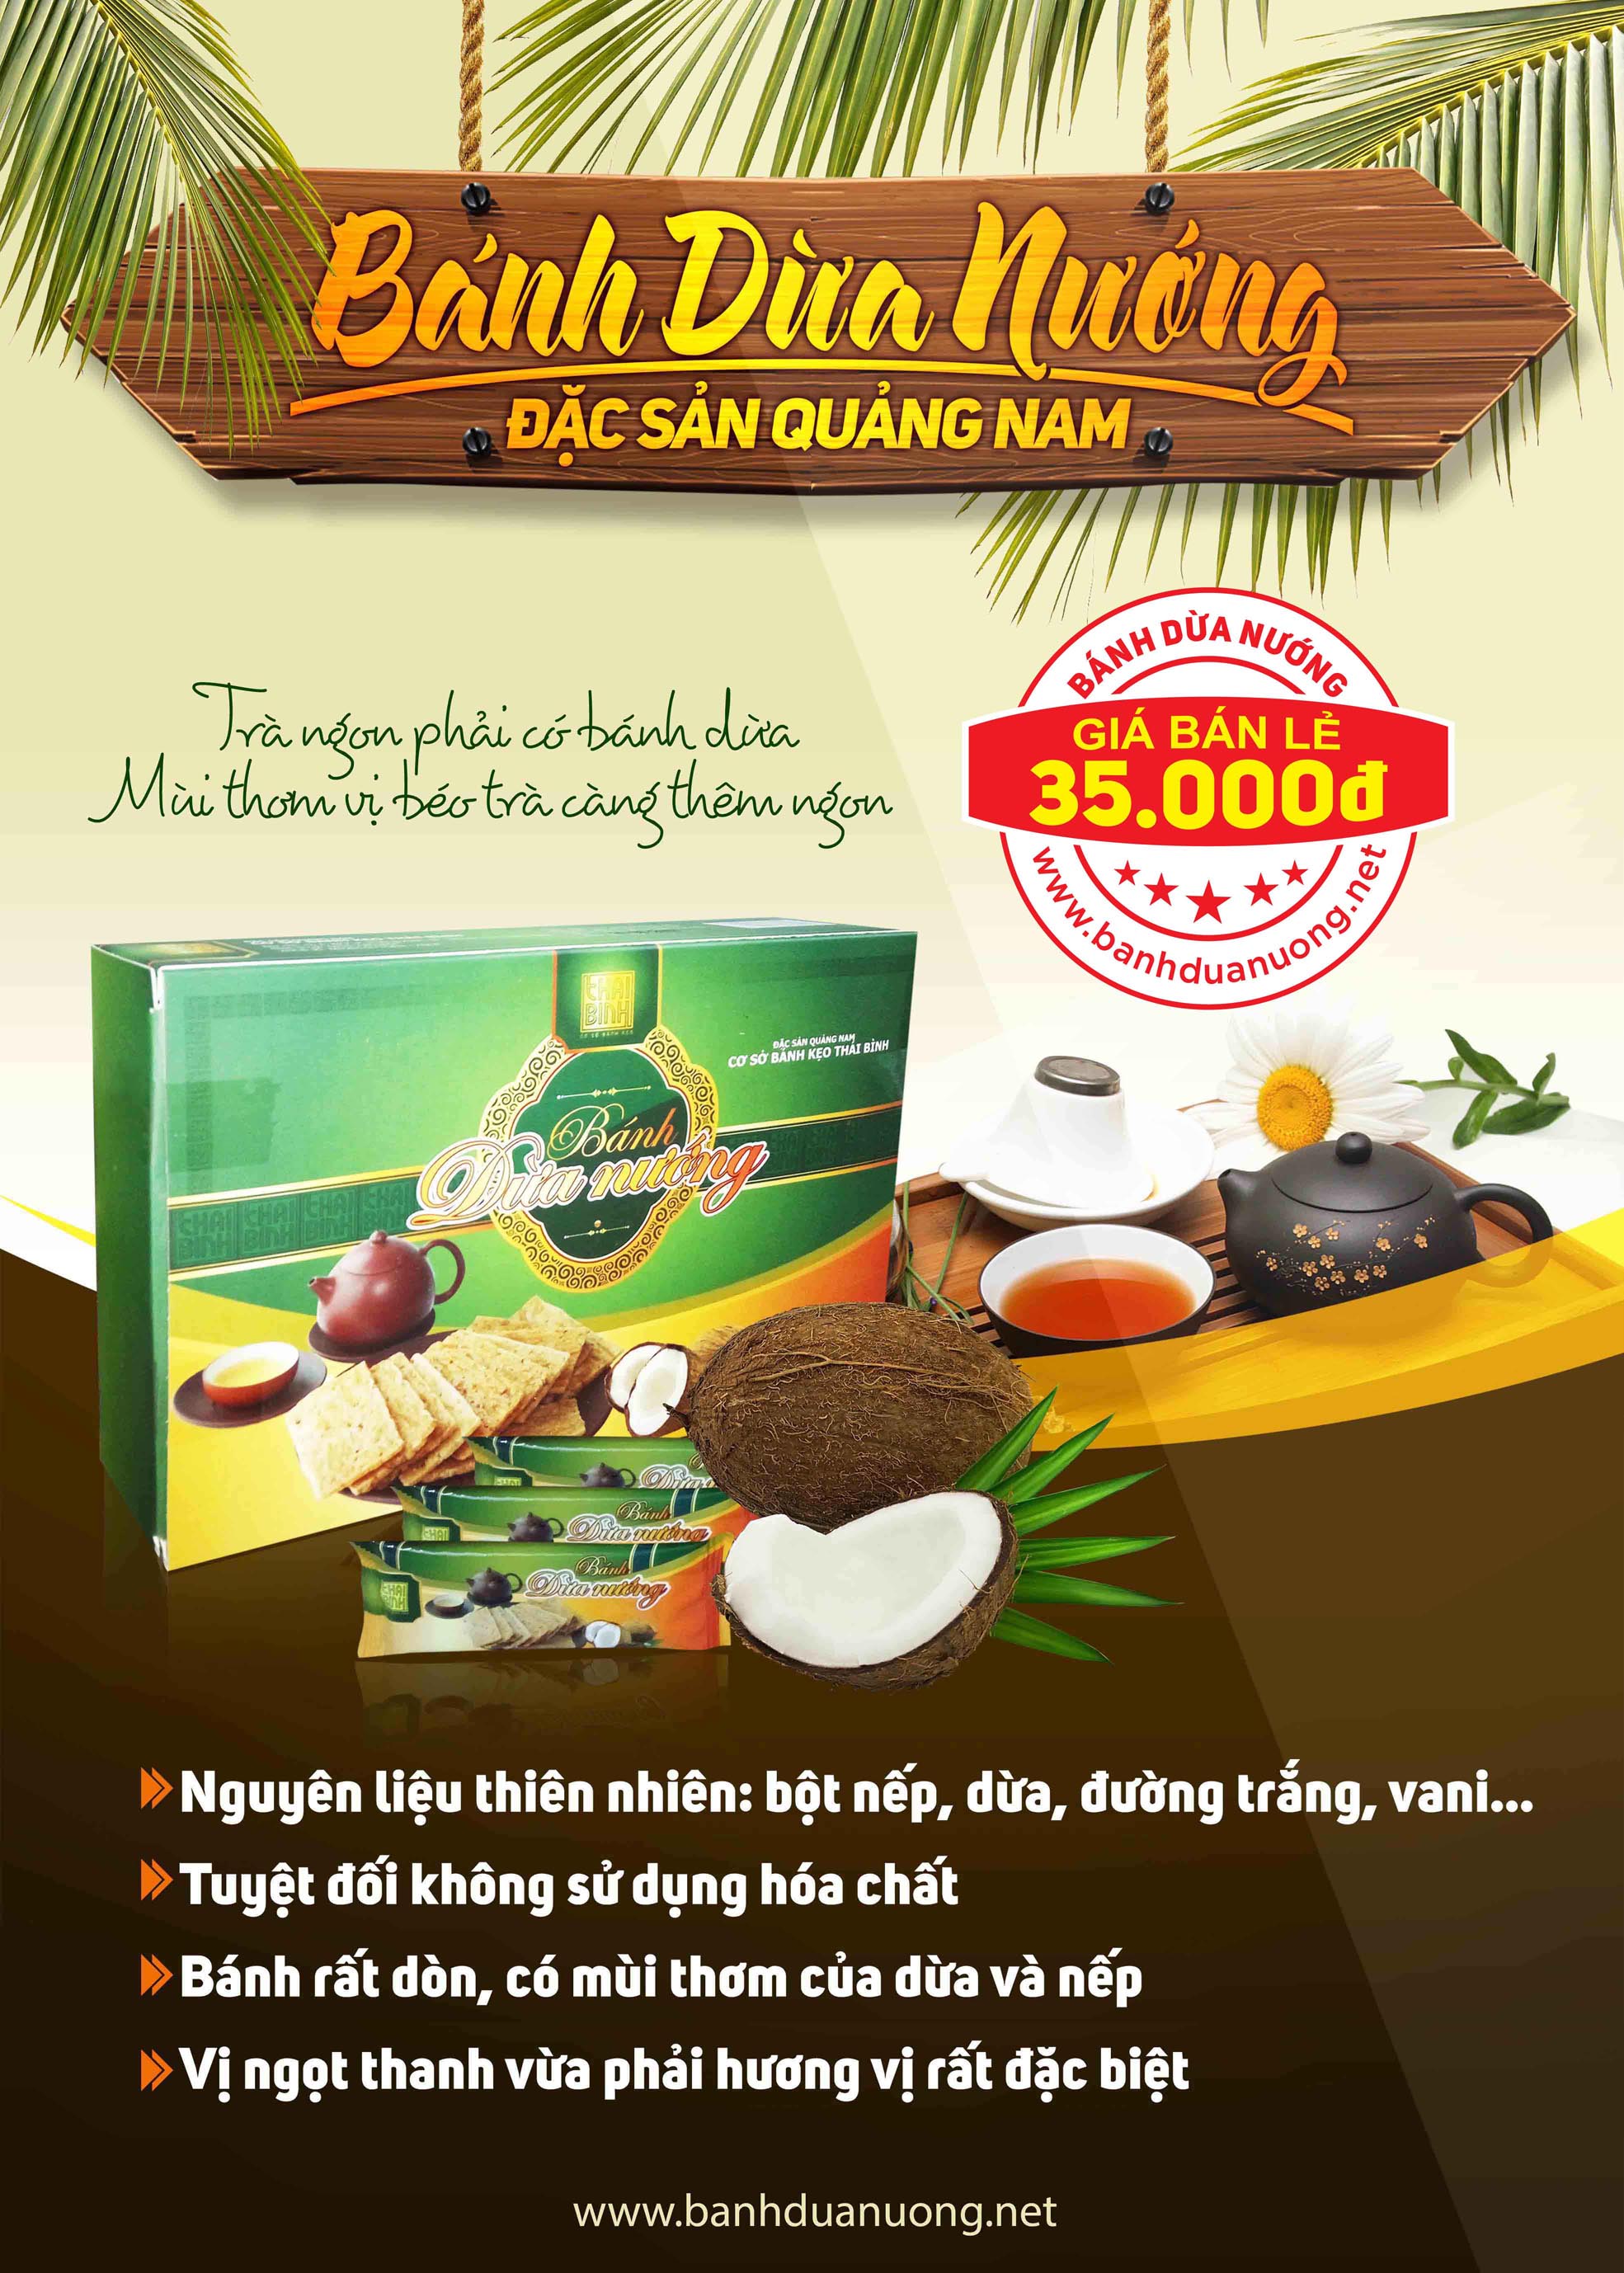 Mua bánh dừa nướng ở đâu tại Bình Thuận